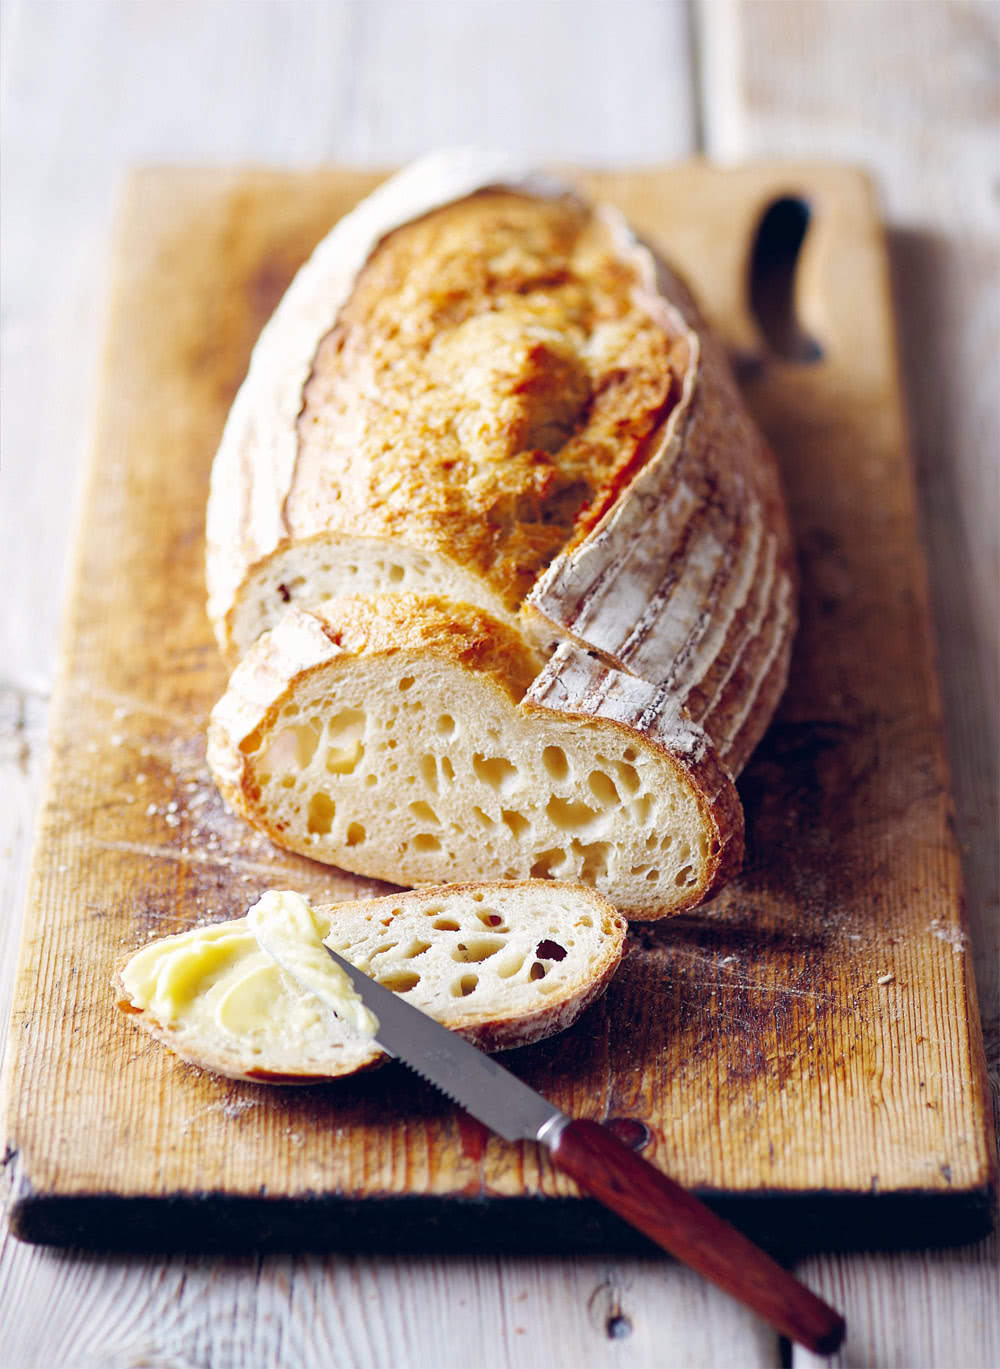 必烤經典麵包：英國金牌麵包師的60堂頂尖烘焙課，60款完美比例配方，烤出蓬鬆溼潤好口感